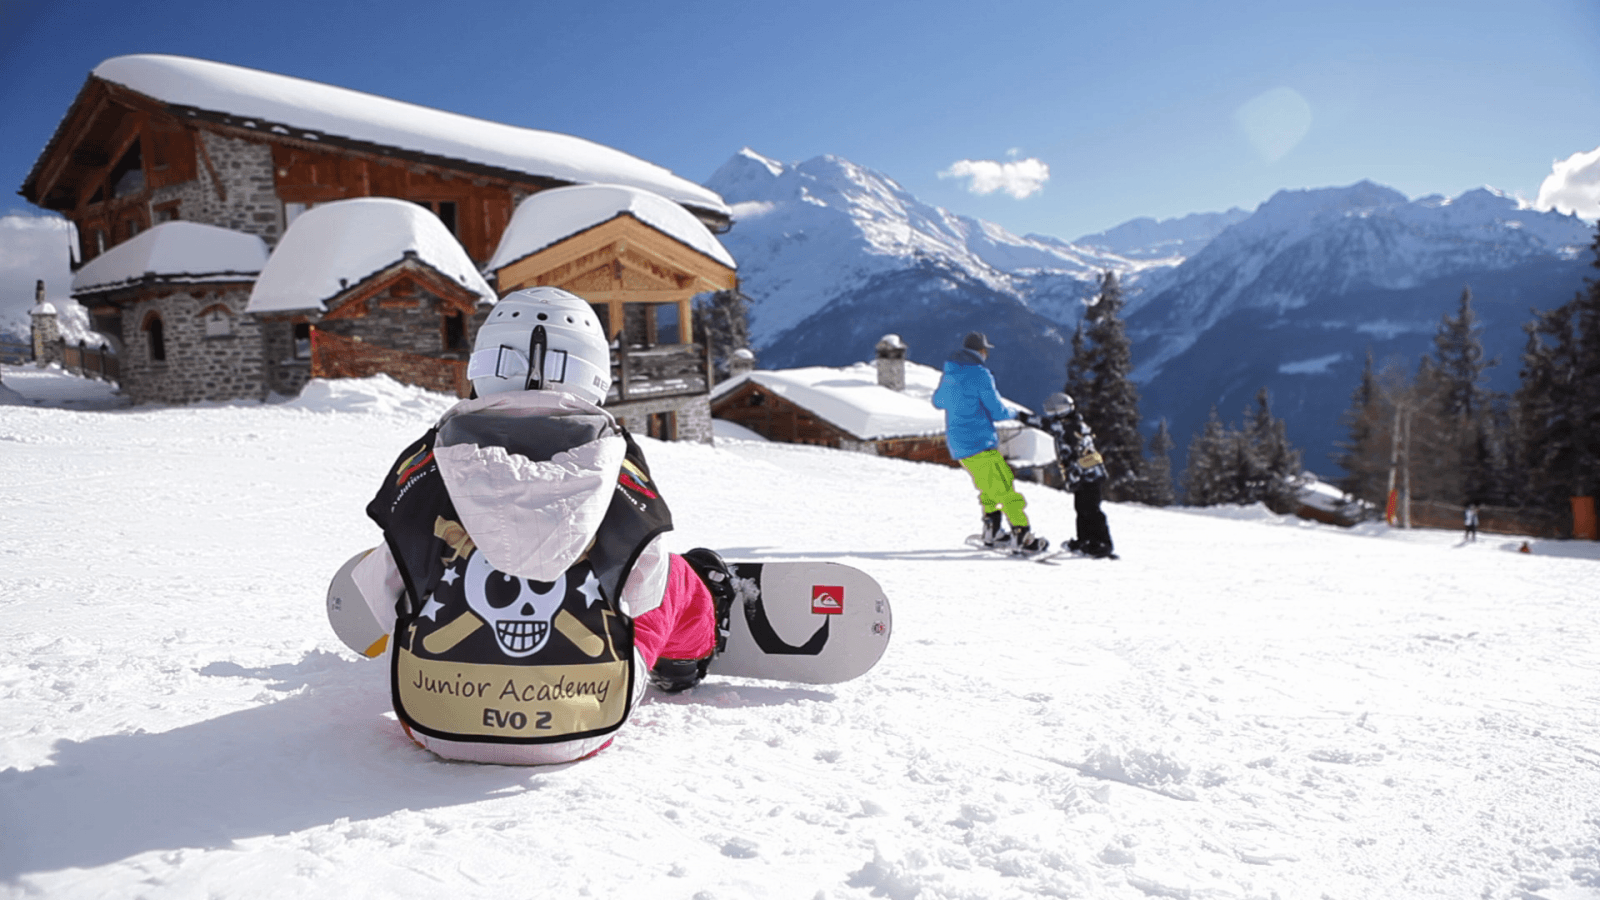 Découvrez le snowboard à La Rosière. La station de ski et le domaine skiable propose un panorama franco-italien à couper le souffle. Nos moniteurs vous accompagneront et vous aideront à progresser dans la discipline.